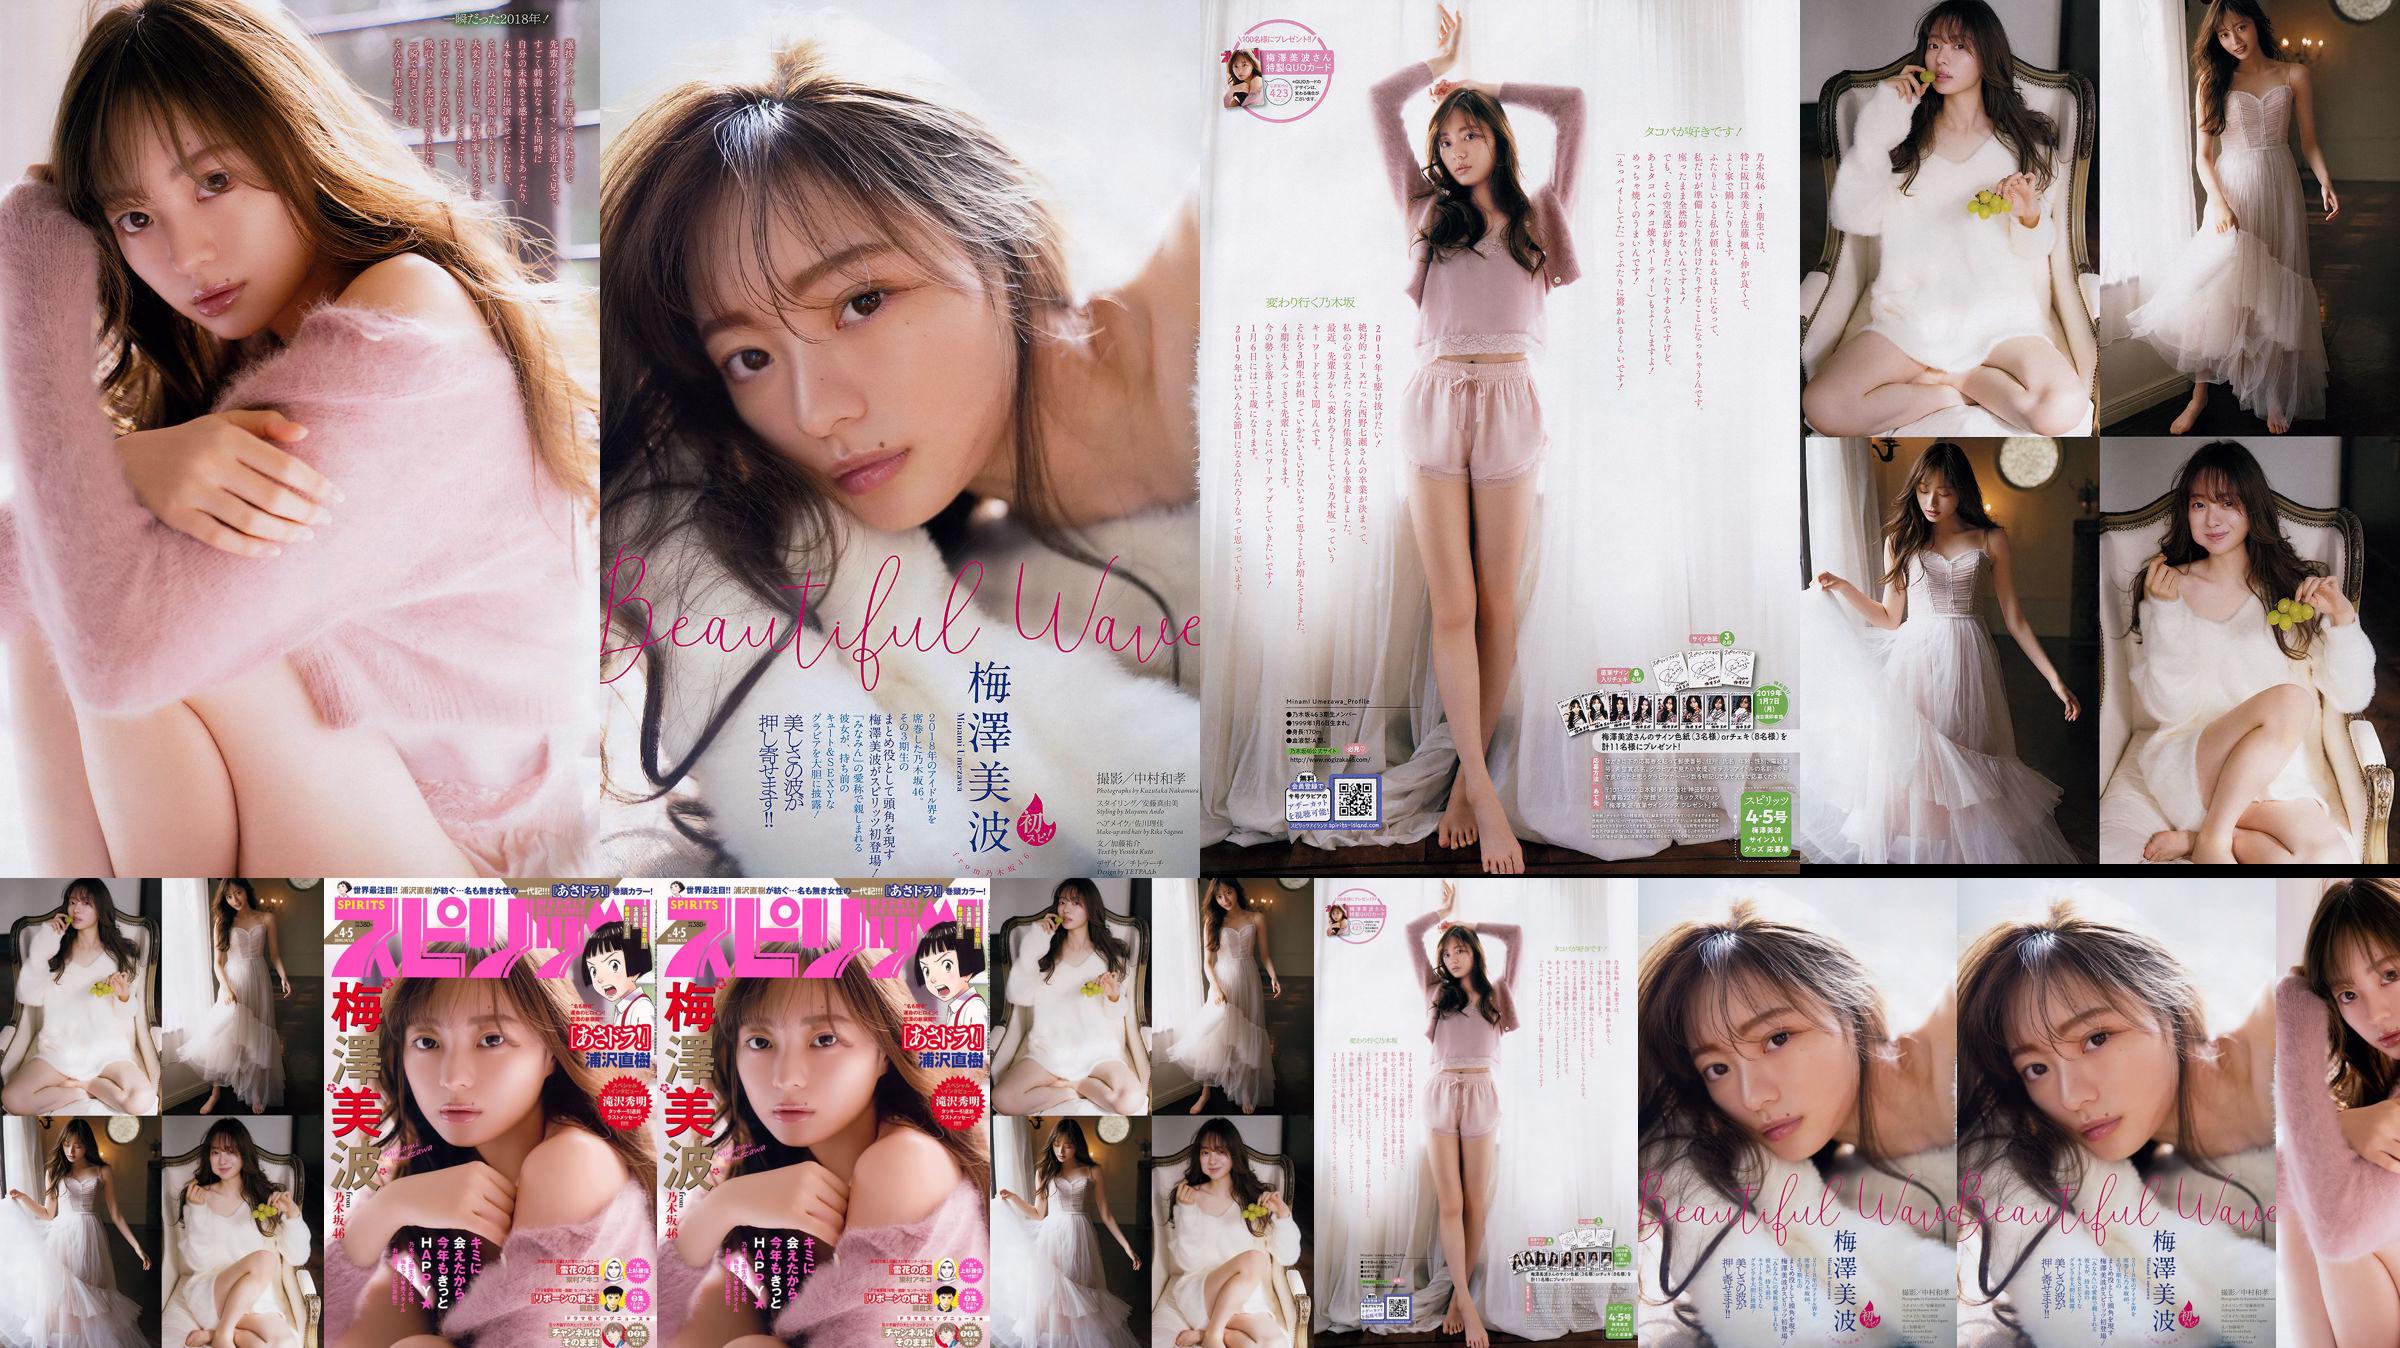 [Wöchentliche große Comic-Geister] Minami Umezawa 2019 No.04-05 Photo Magazine No.d5264e Seite 2